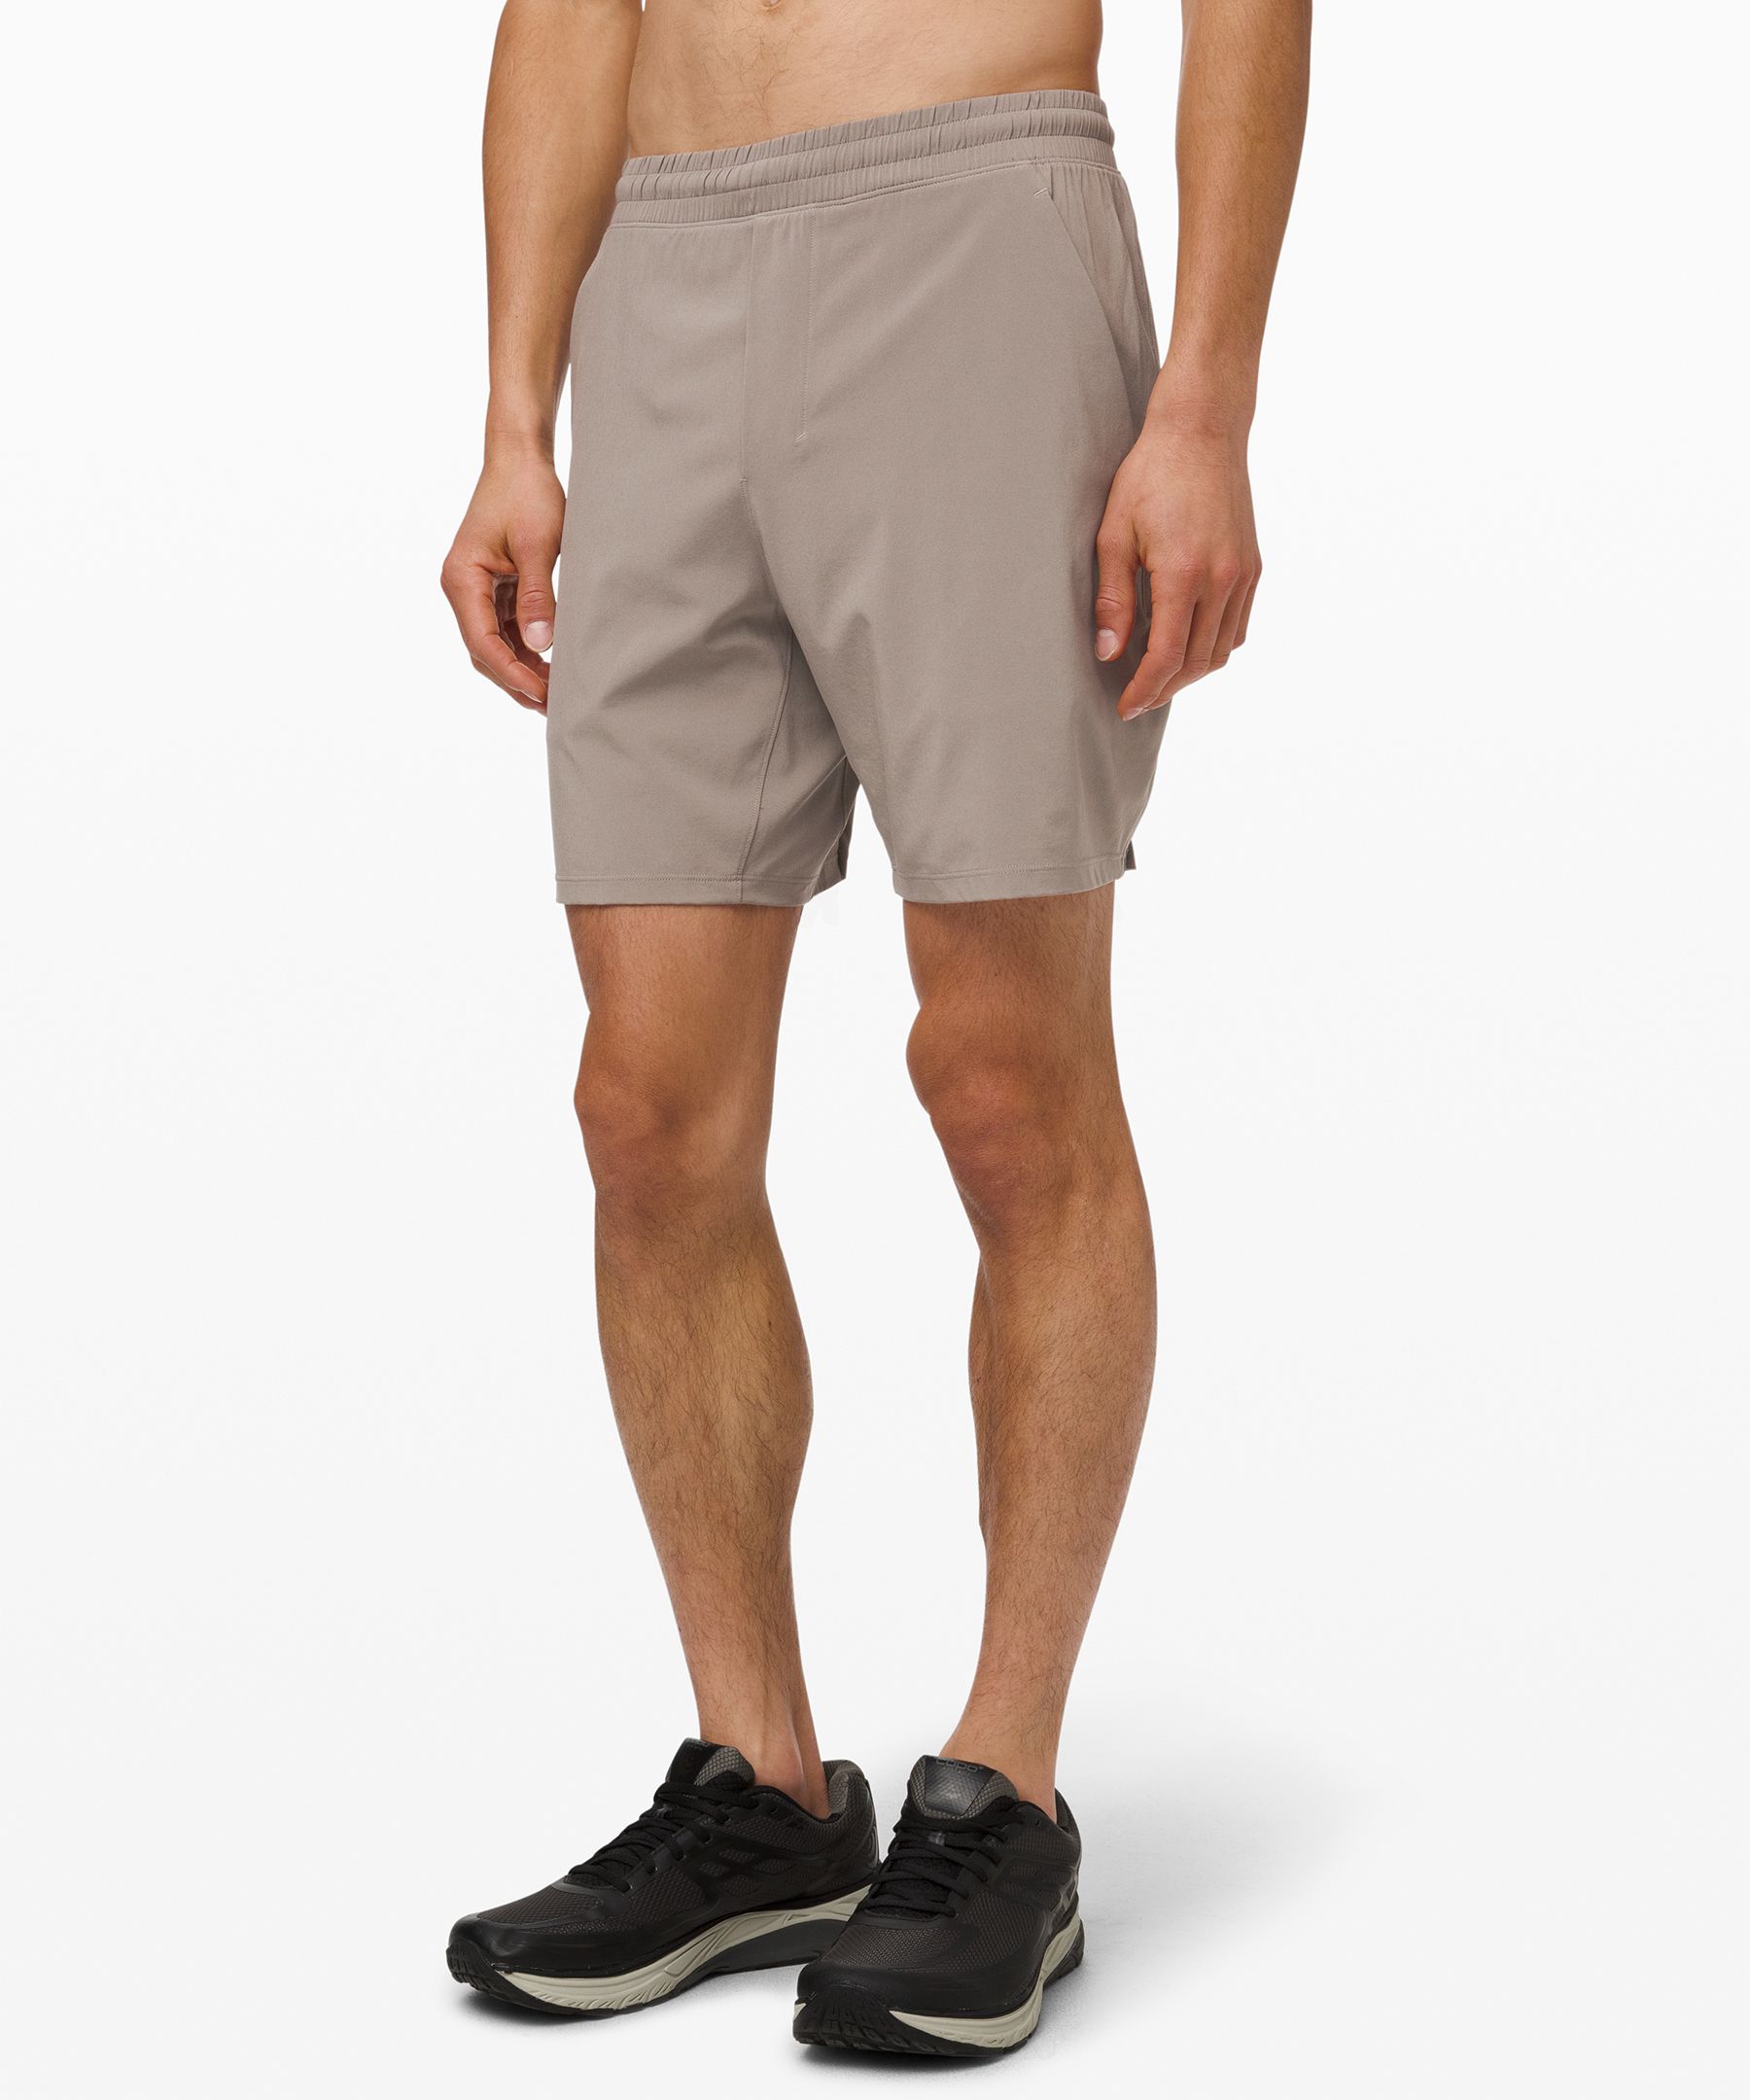 lululemon shorts sale